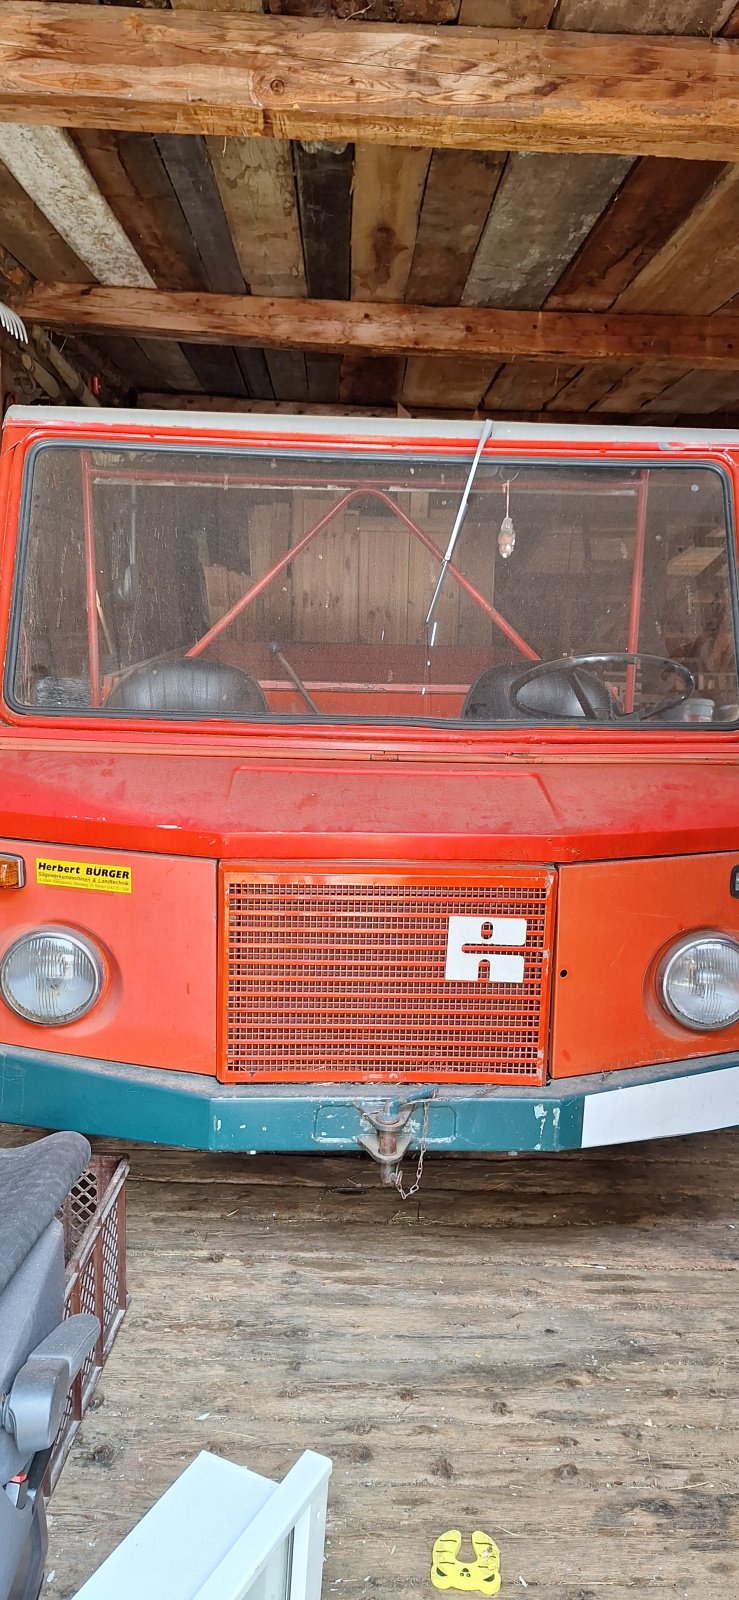 Transportfahrzeug des Typs Reform Muli 40, Gebrauchtmaschine in Bad Kleinkirchheim (Bild 1)